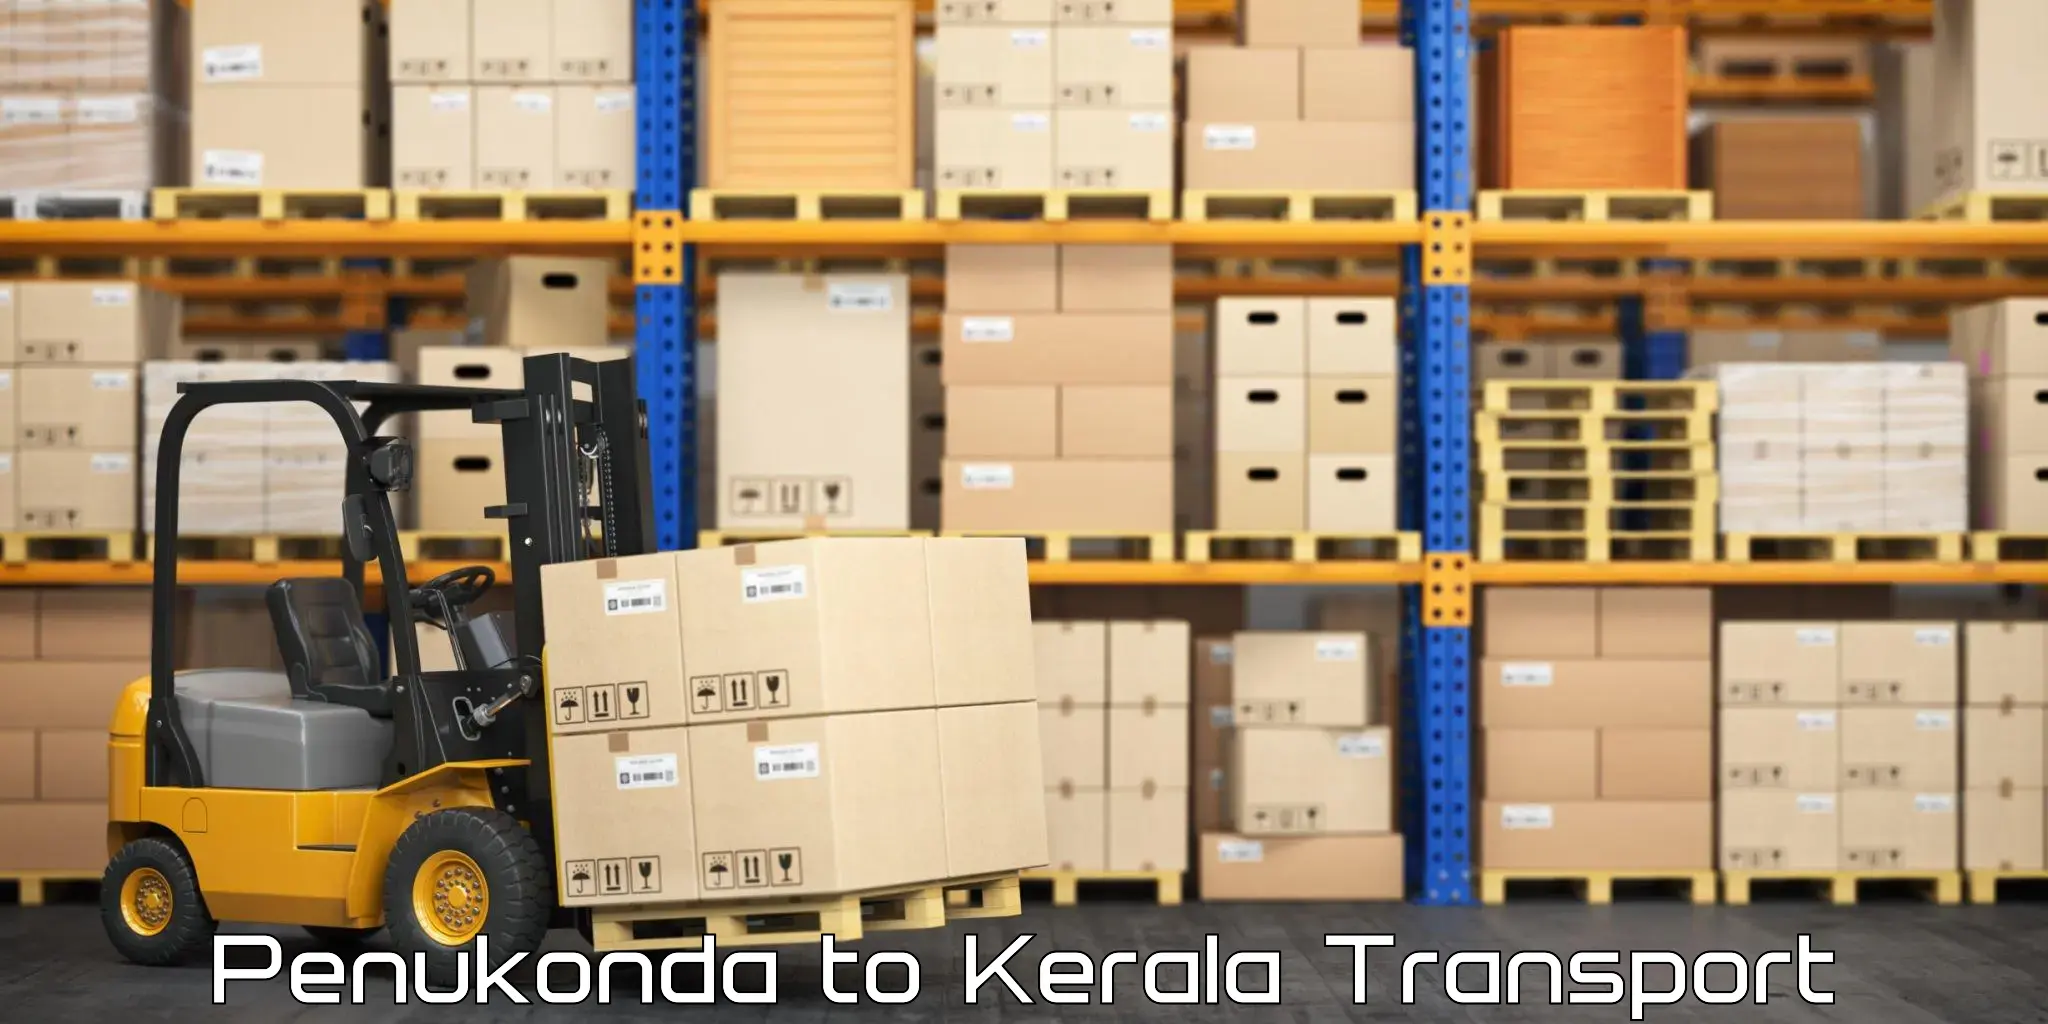 Goods transport services Penukonda to Kuttikol